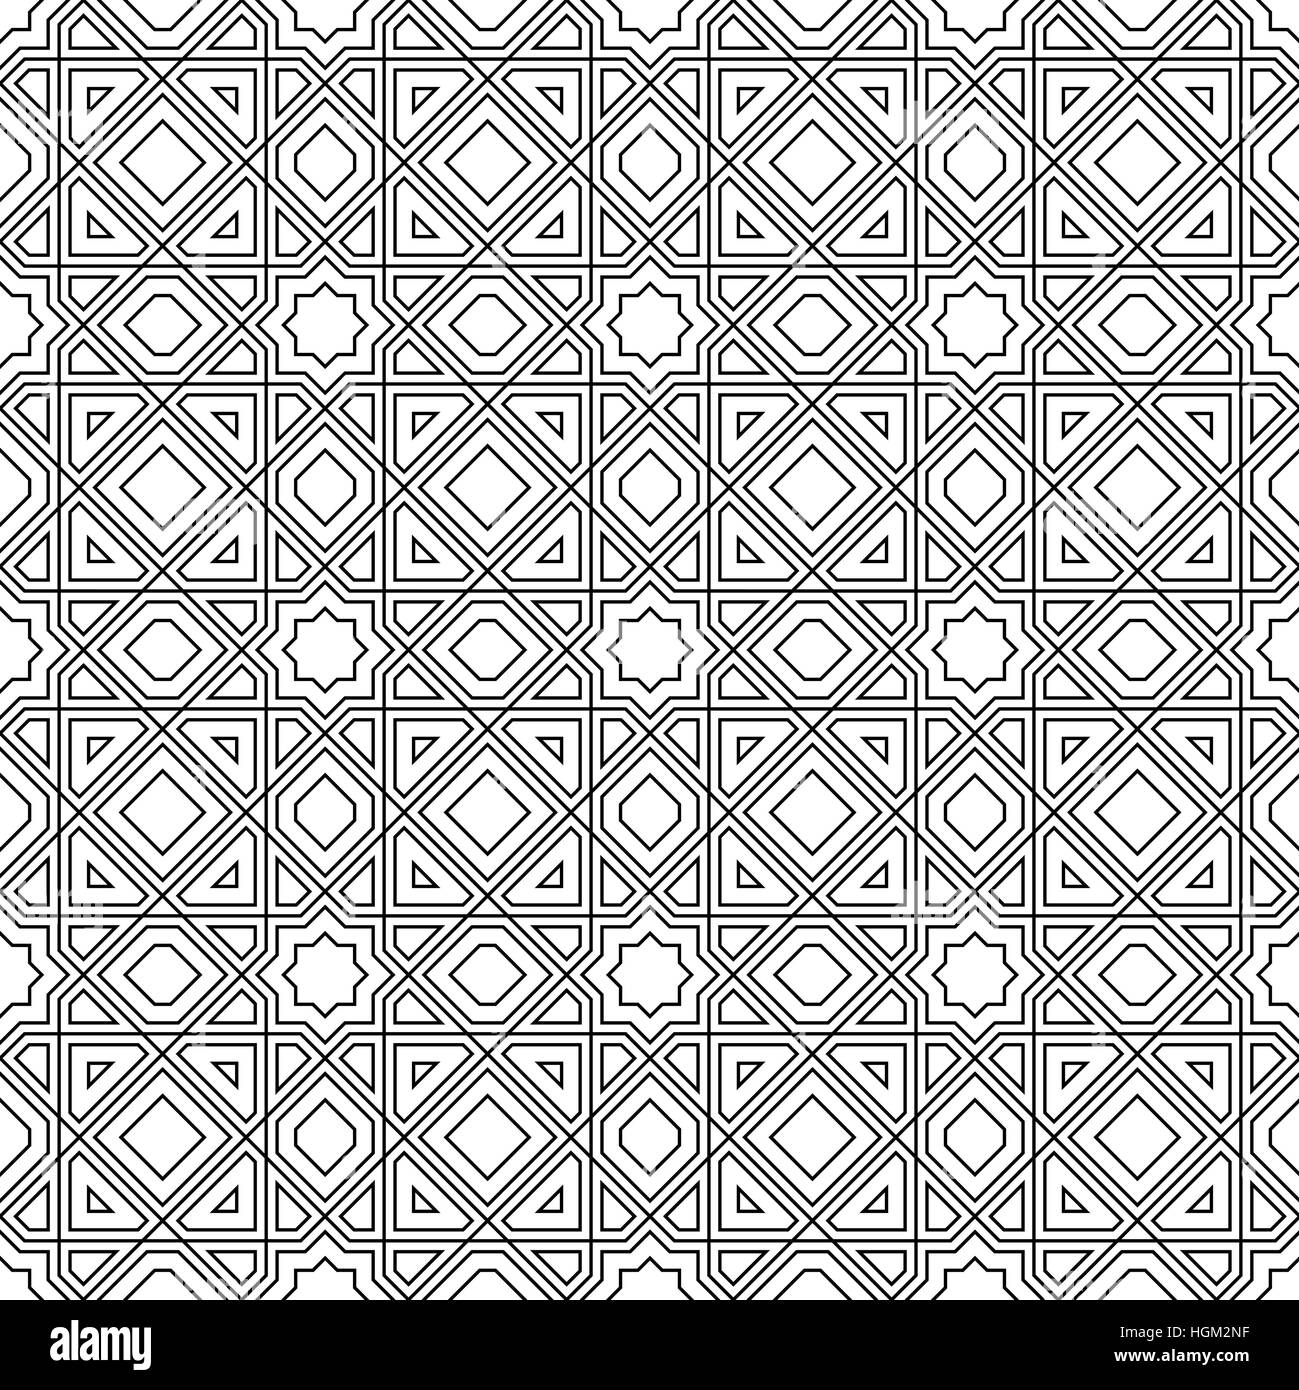 Klassischen islamischen oder arabischen Musterdesign einfach. Vektor-illustration Stock Vektor